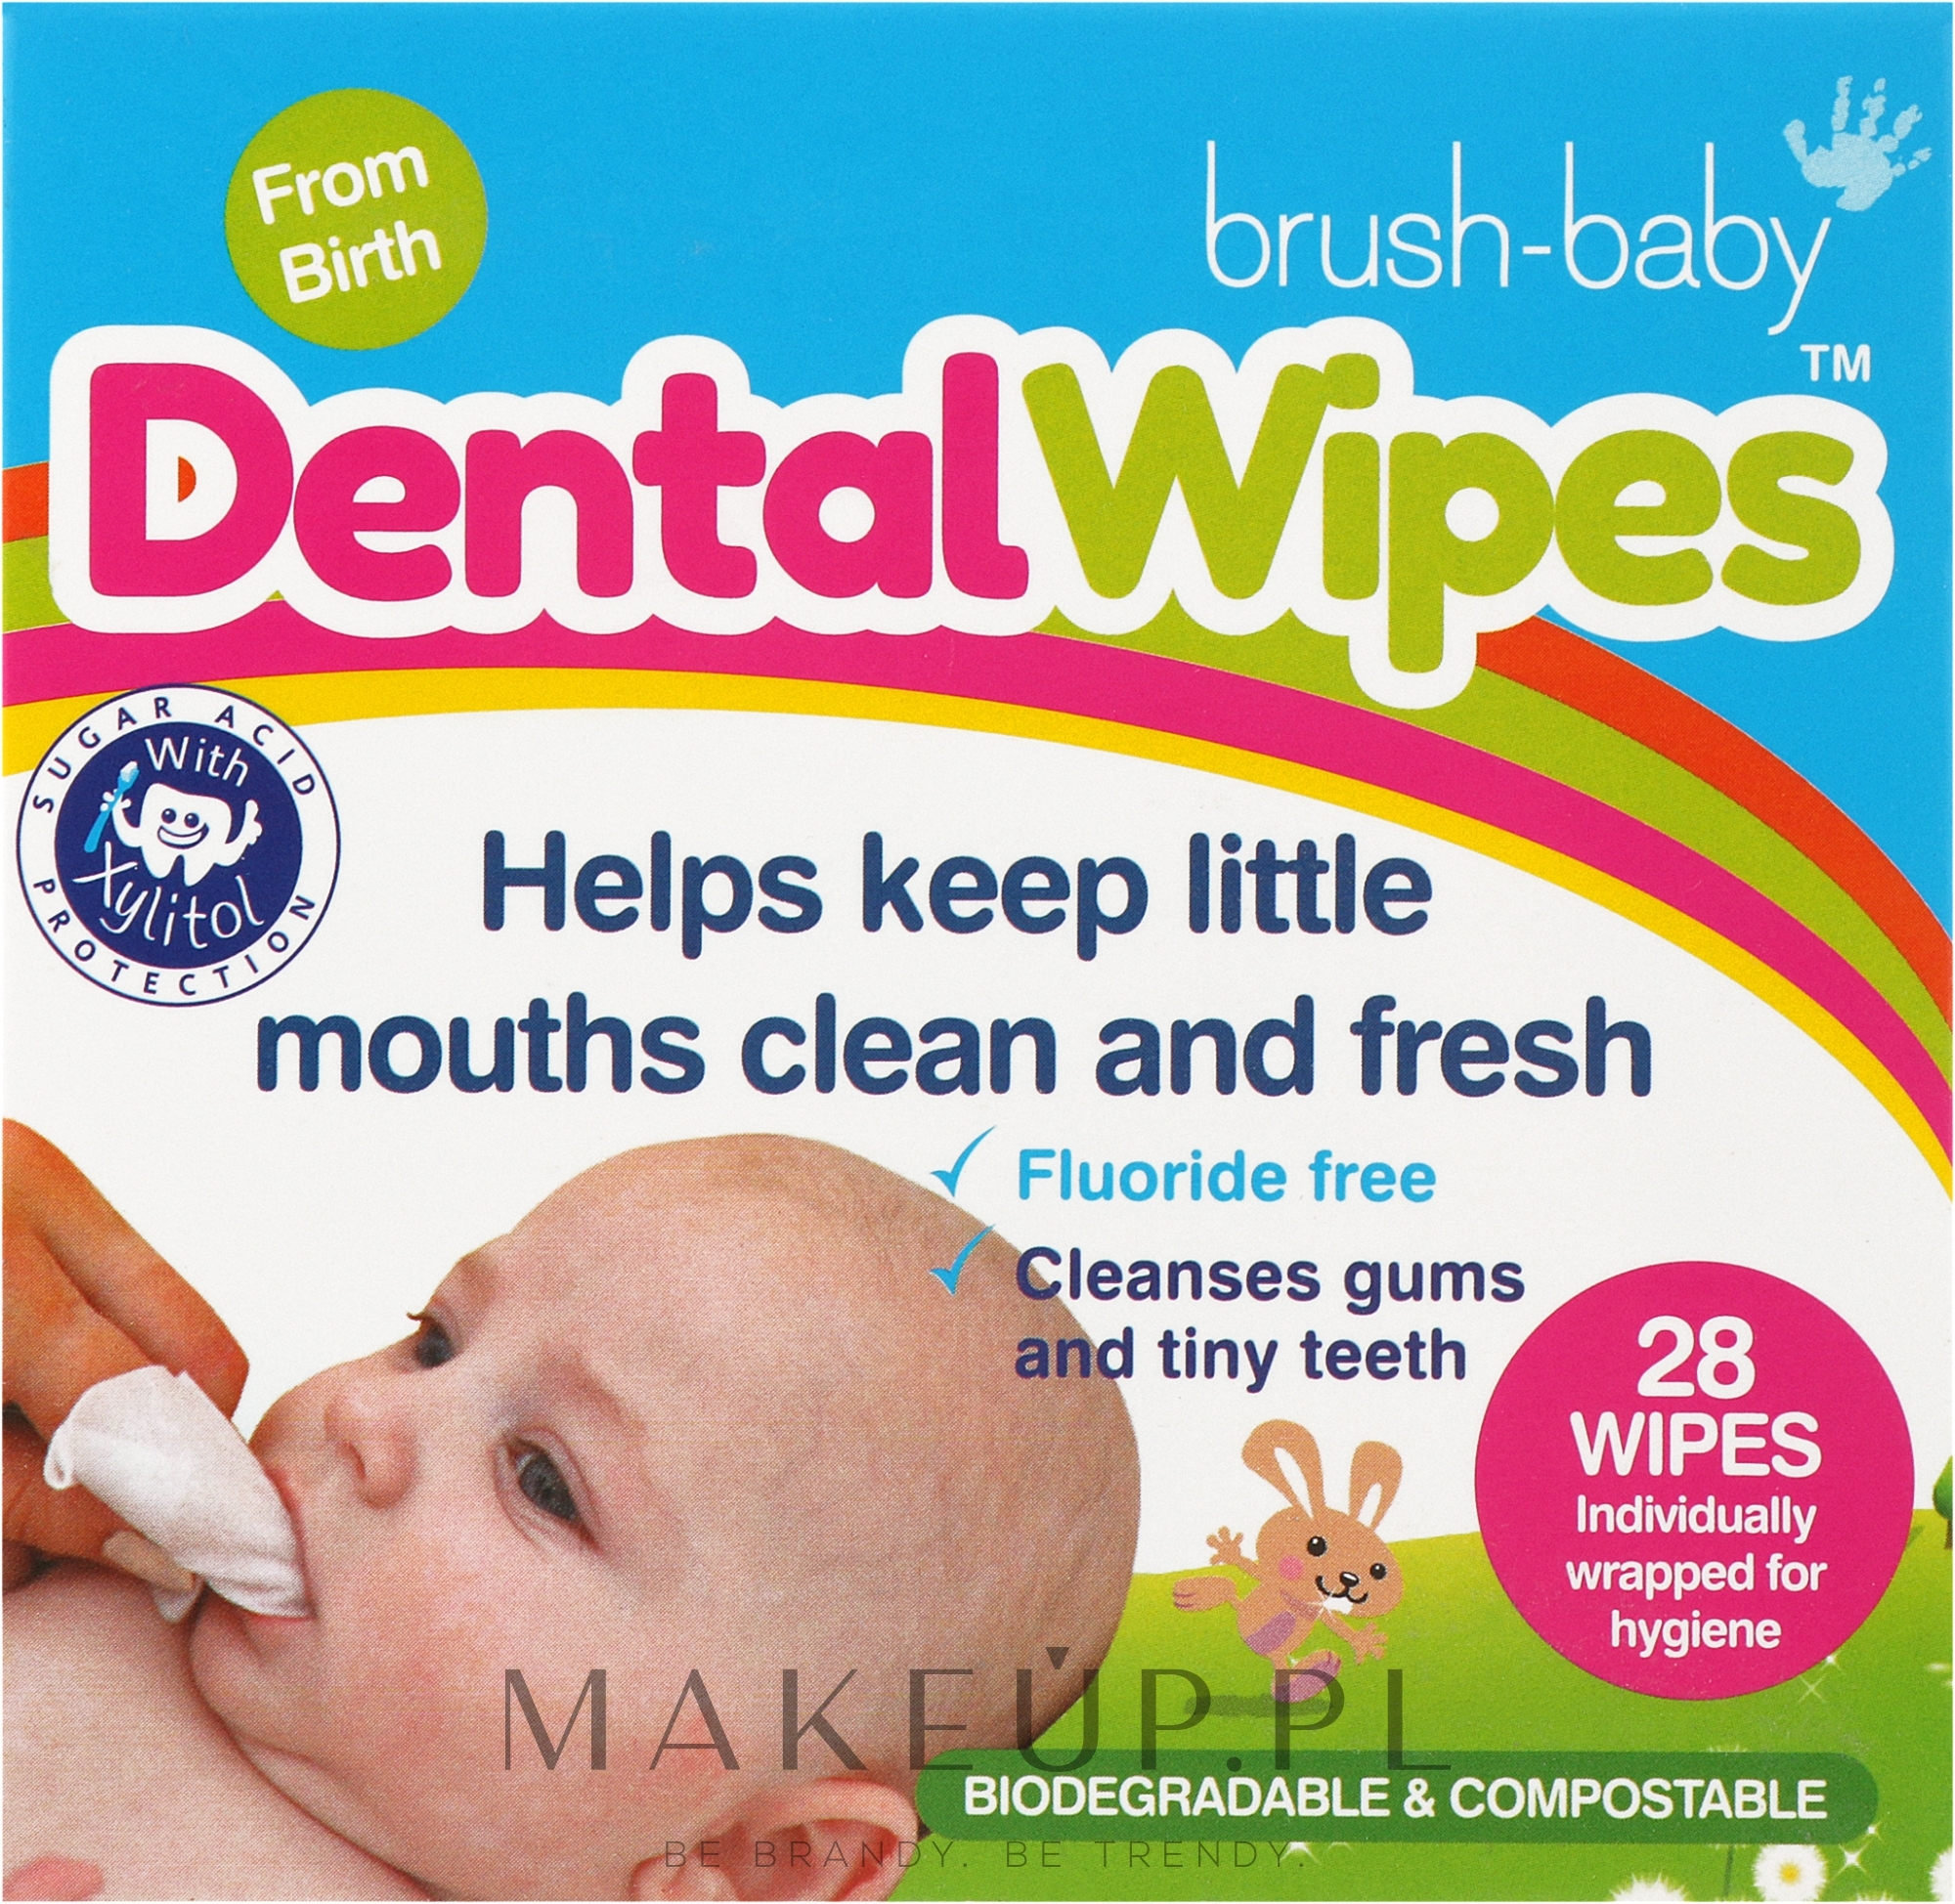 Jednorazowe chusteczki dentystyczne dla dzieci DentalWipes - Brush-Baby — Zdjęcie 28 szt.